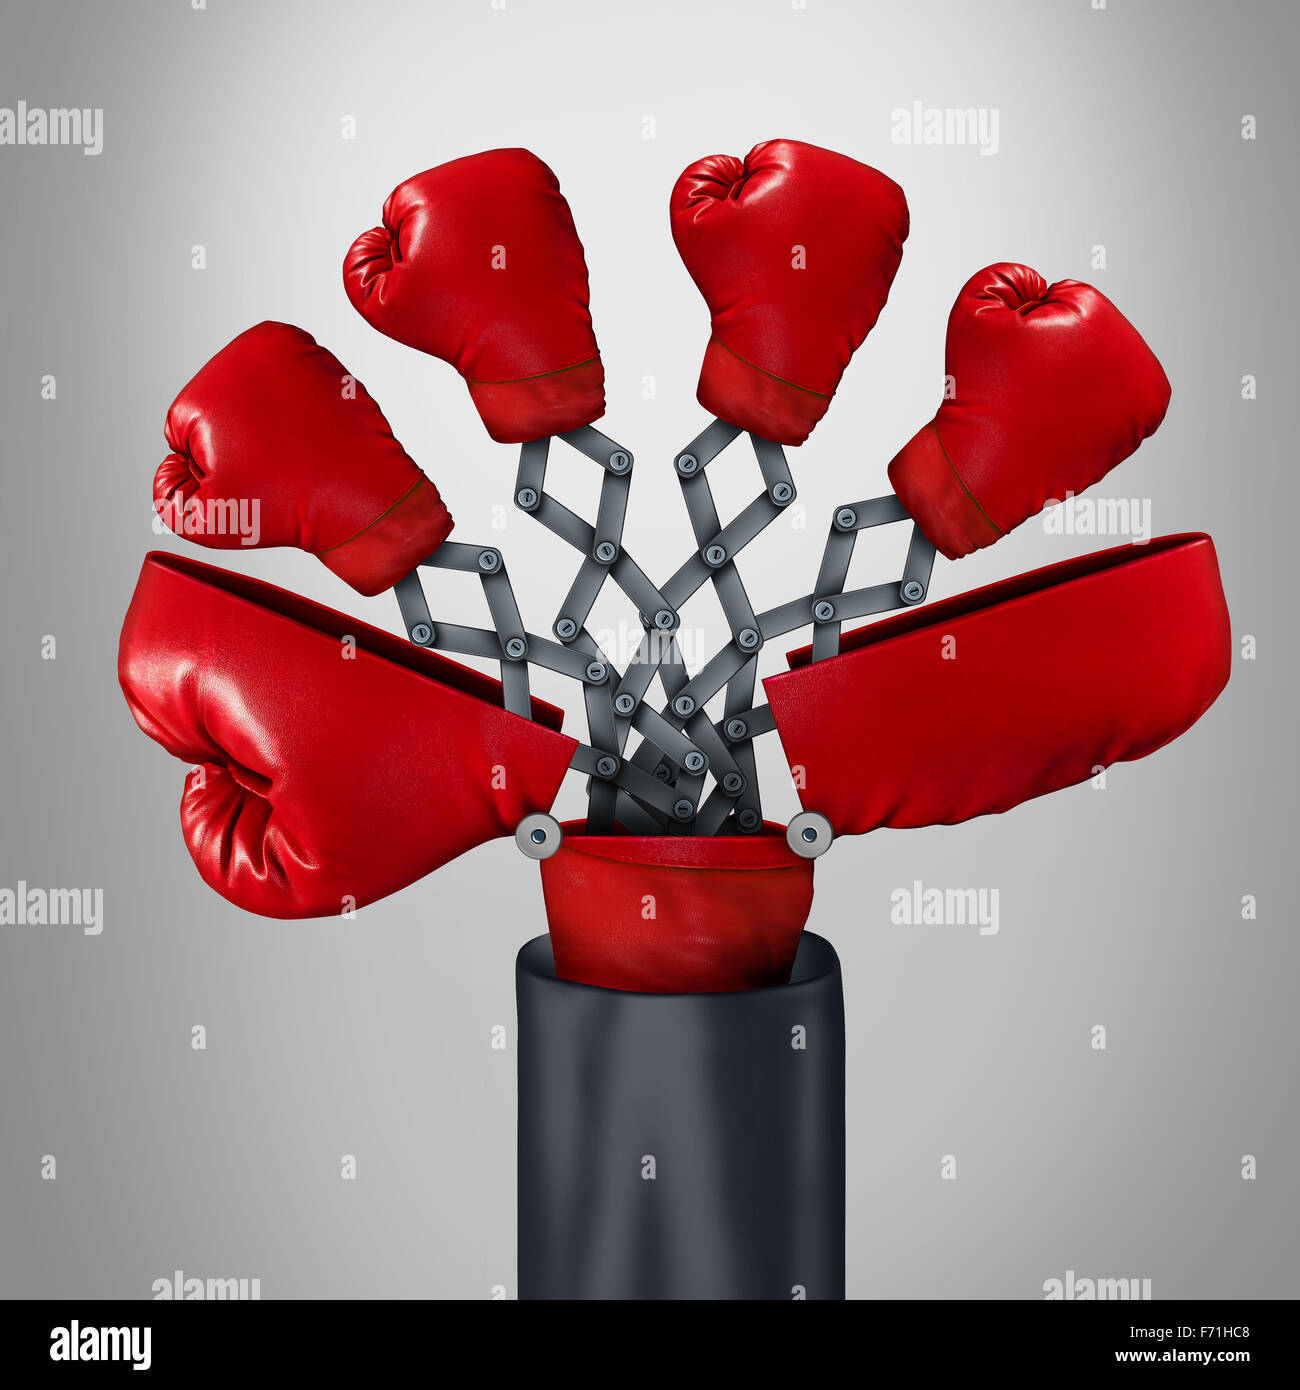 Innovative Wettbewerber Geschäftskonzept als eine offene große Boxhandschuh mit vier anderen roten Handschuhen auftauchen als ein Spiel-Wechsler Strategie Symbol für wettbewerbsfähige Innovator Vorteil durch clevere Erfindung. Stockfoto